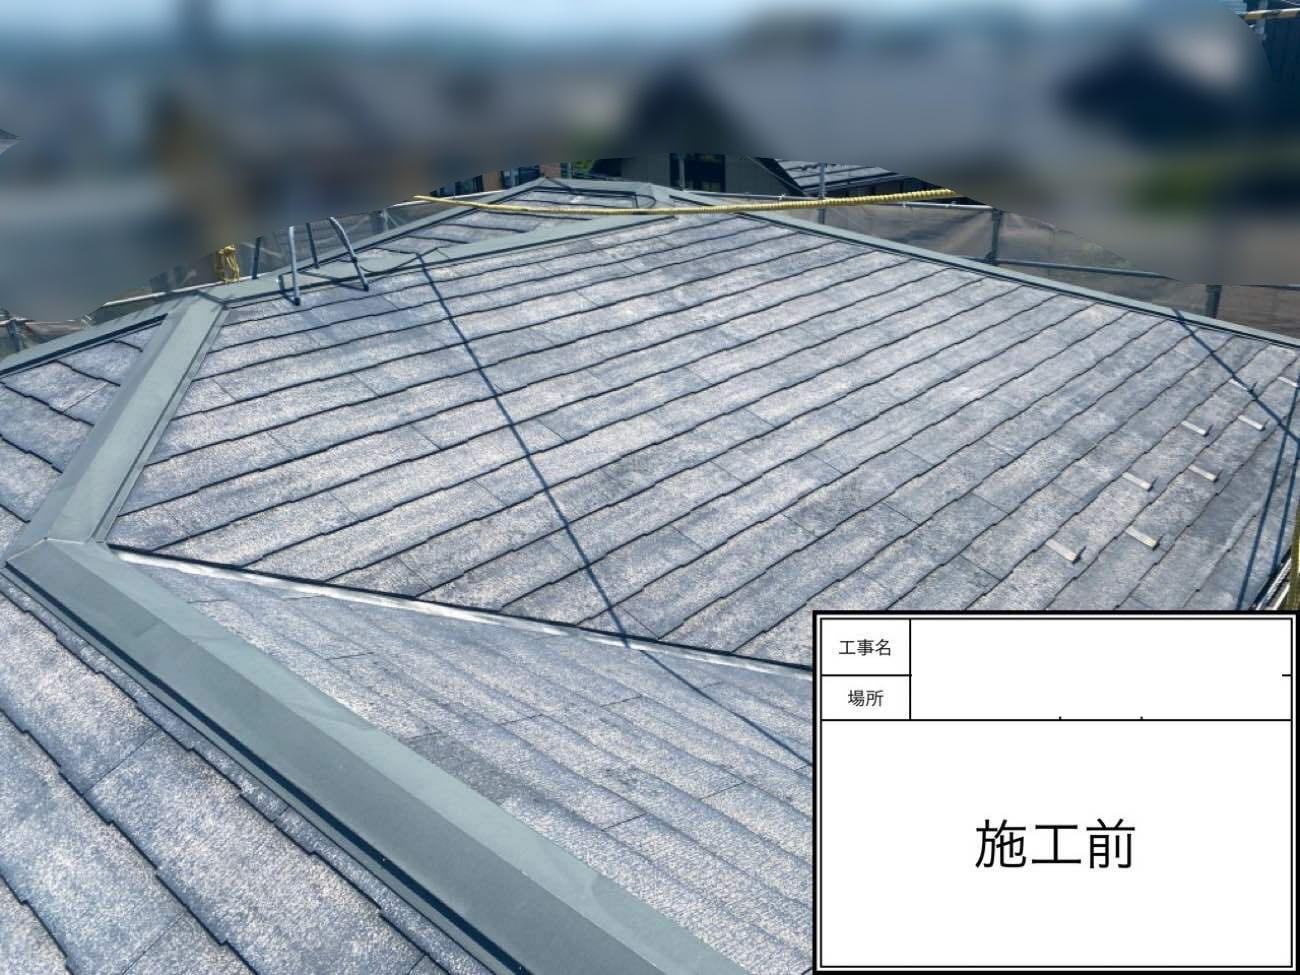 名古屋市北区で褪せて劣化した化粧スレート屋根の塗装工事をしました